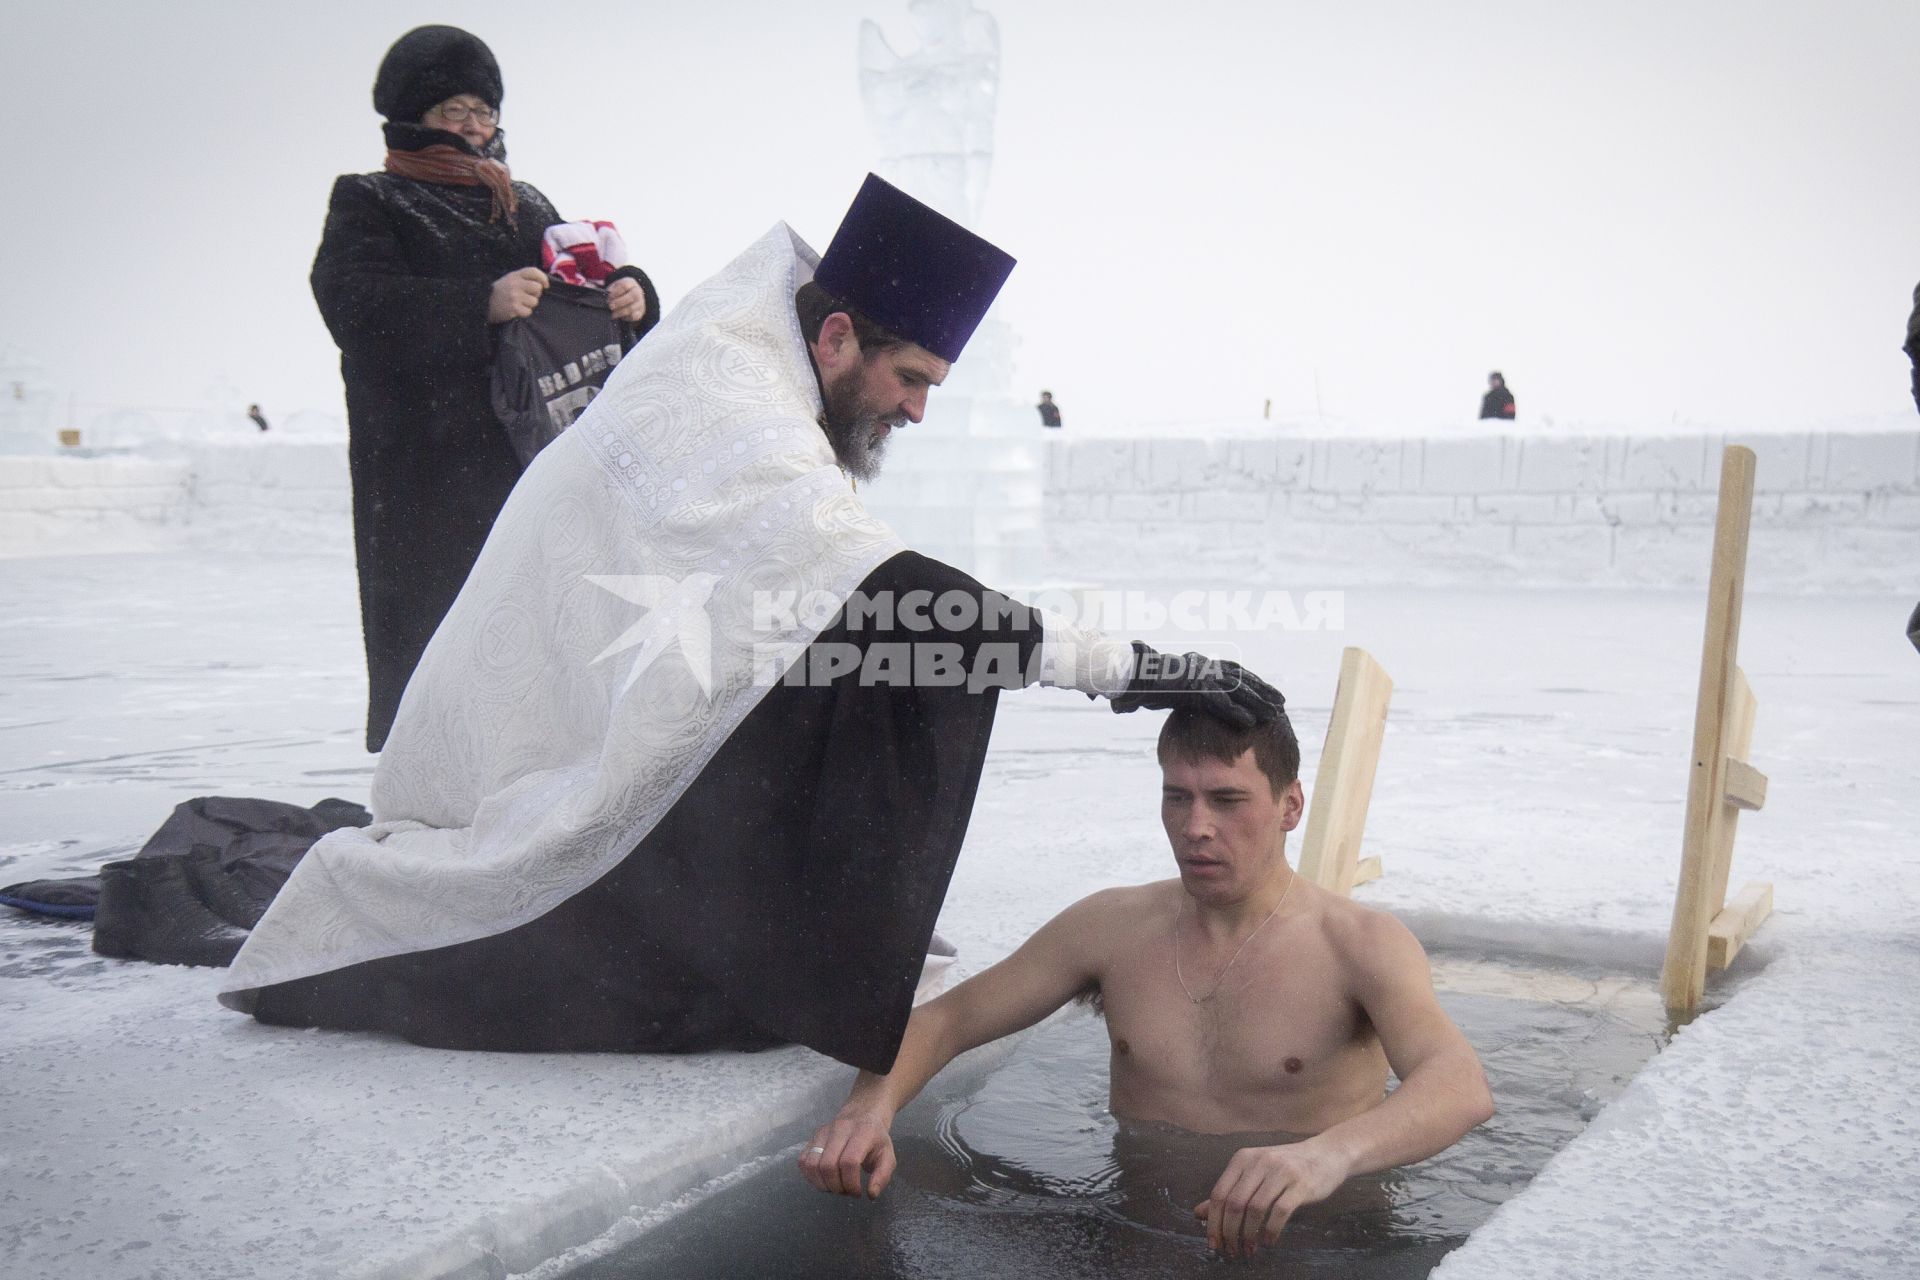 Крещенские купания в Иркутске. Священнослужитель окунает юношу в прорубь.